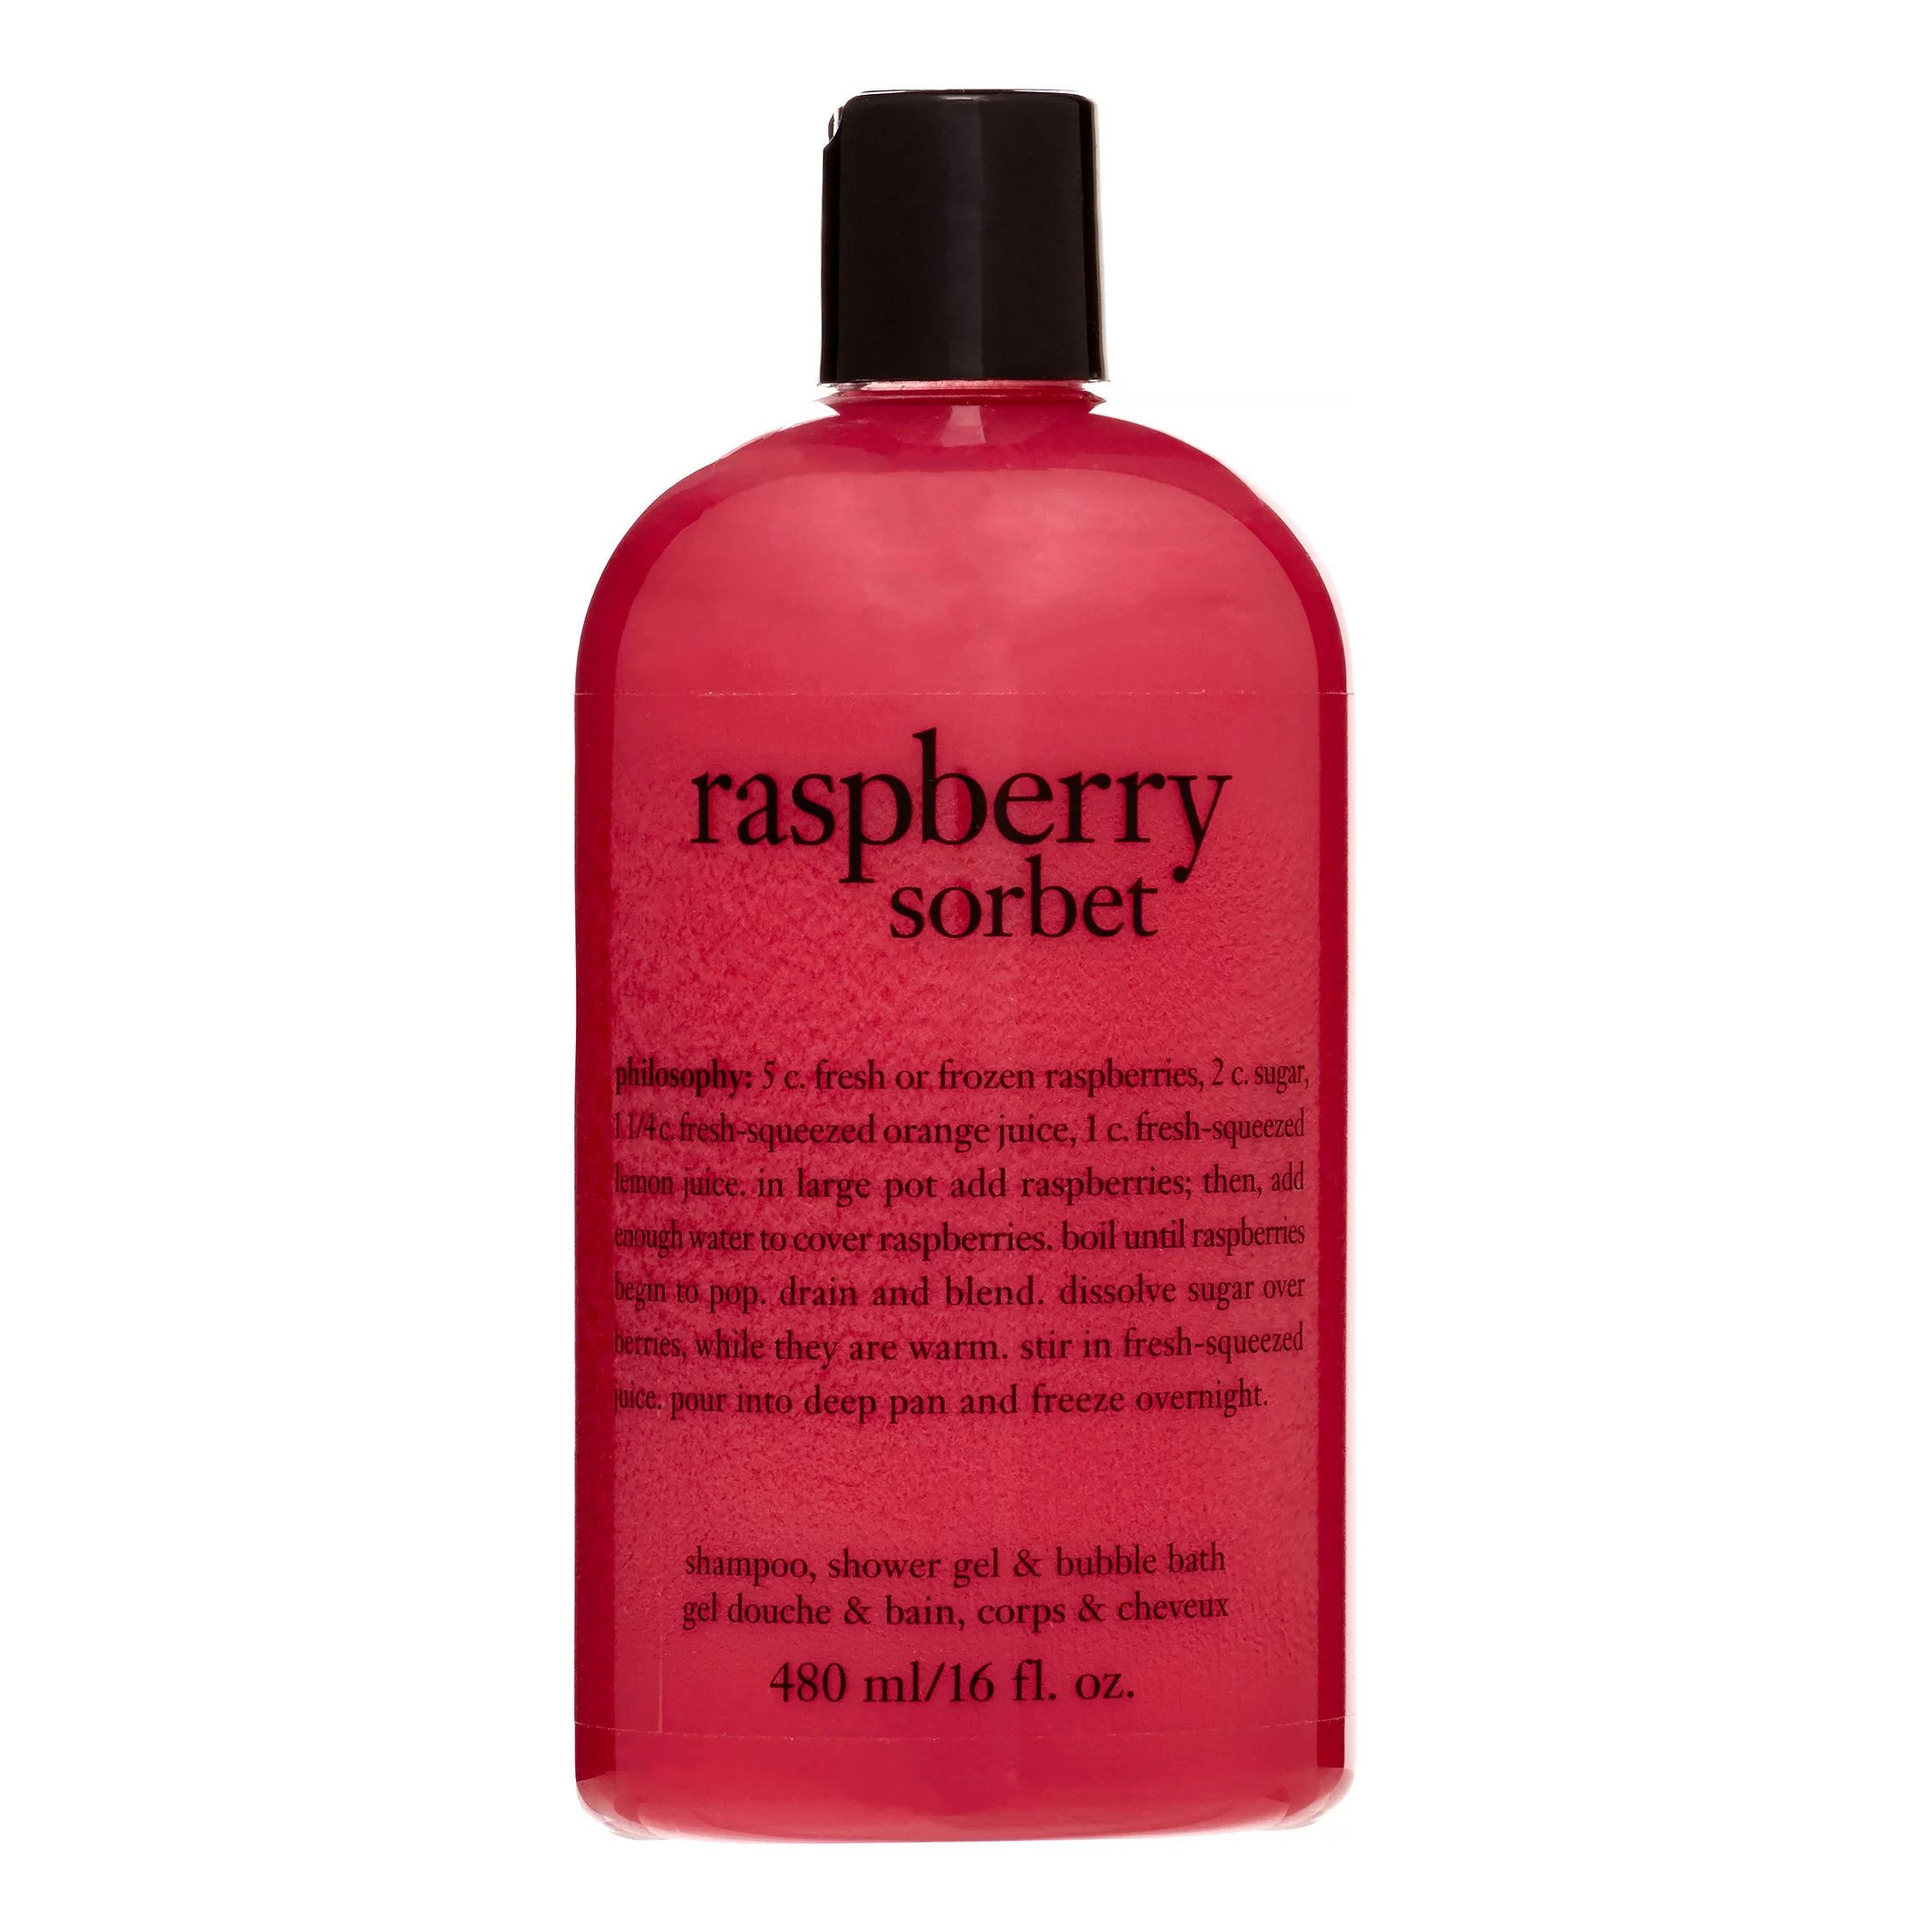 Philosophy Raspberry Sorbet 3 in 1 Shampoo, Shower Gel & Bubble Bath, 16 Oz